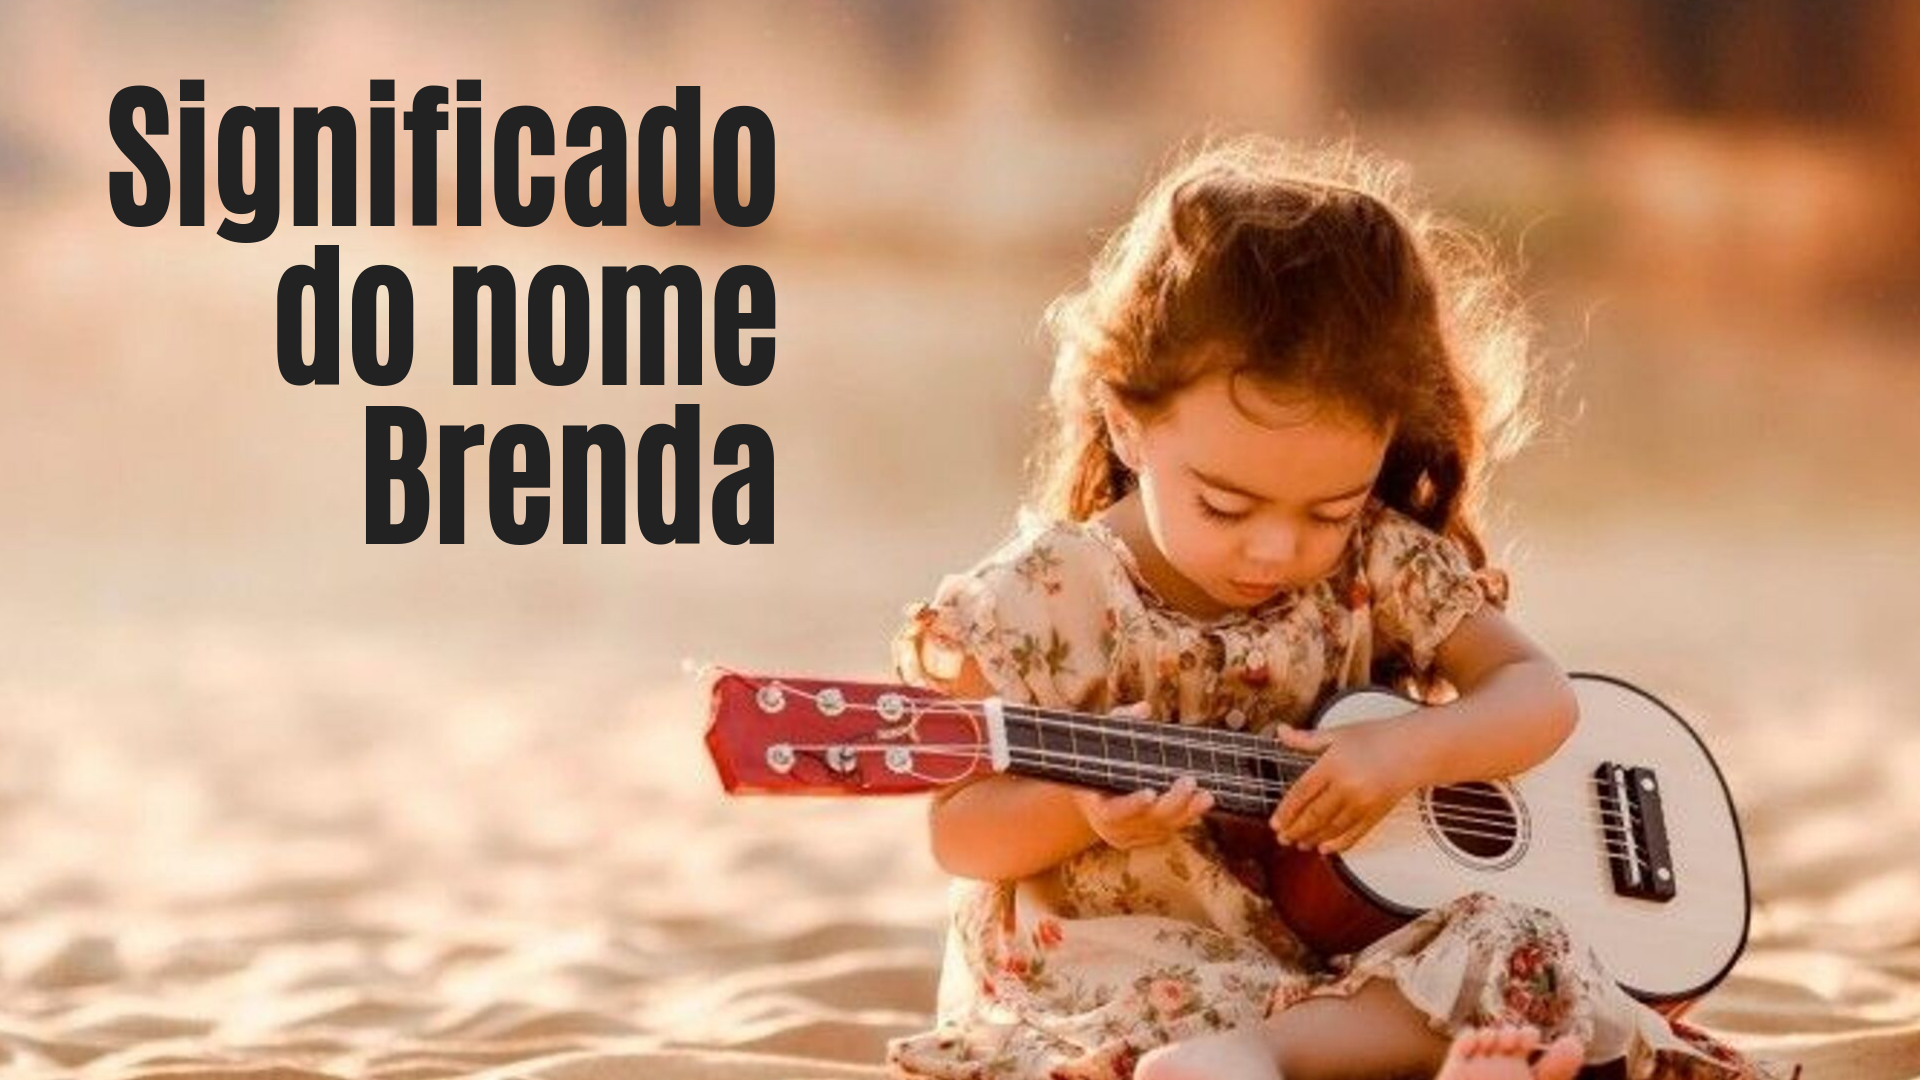 menina tocando violão foto escrita significado do nome Brenda